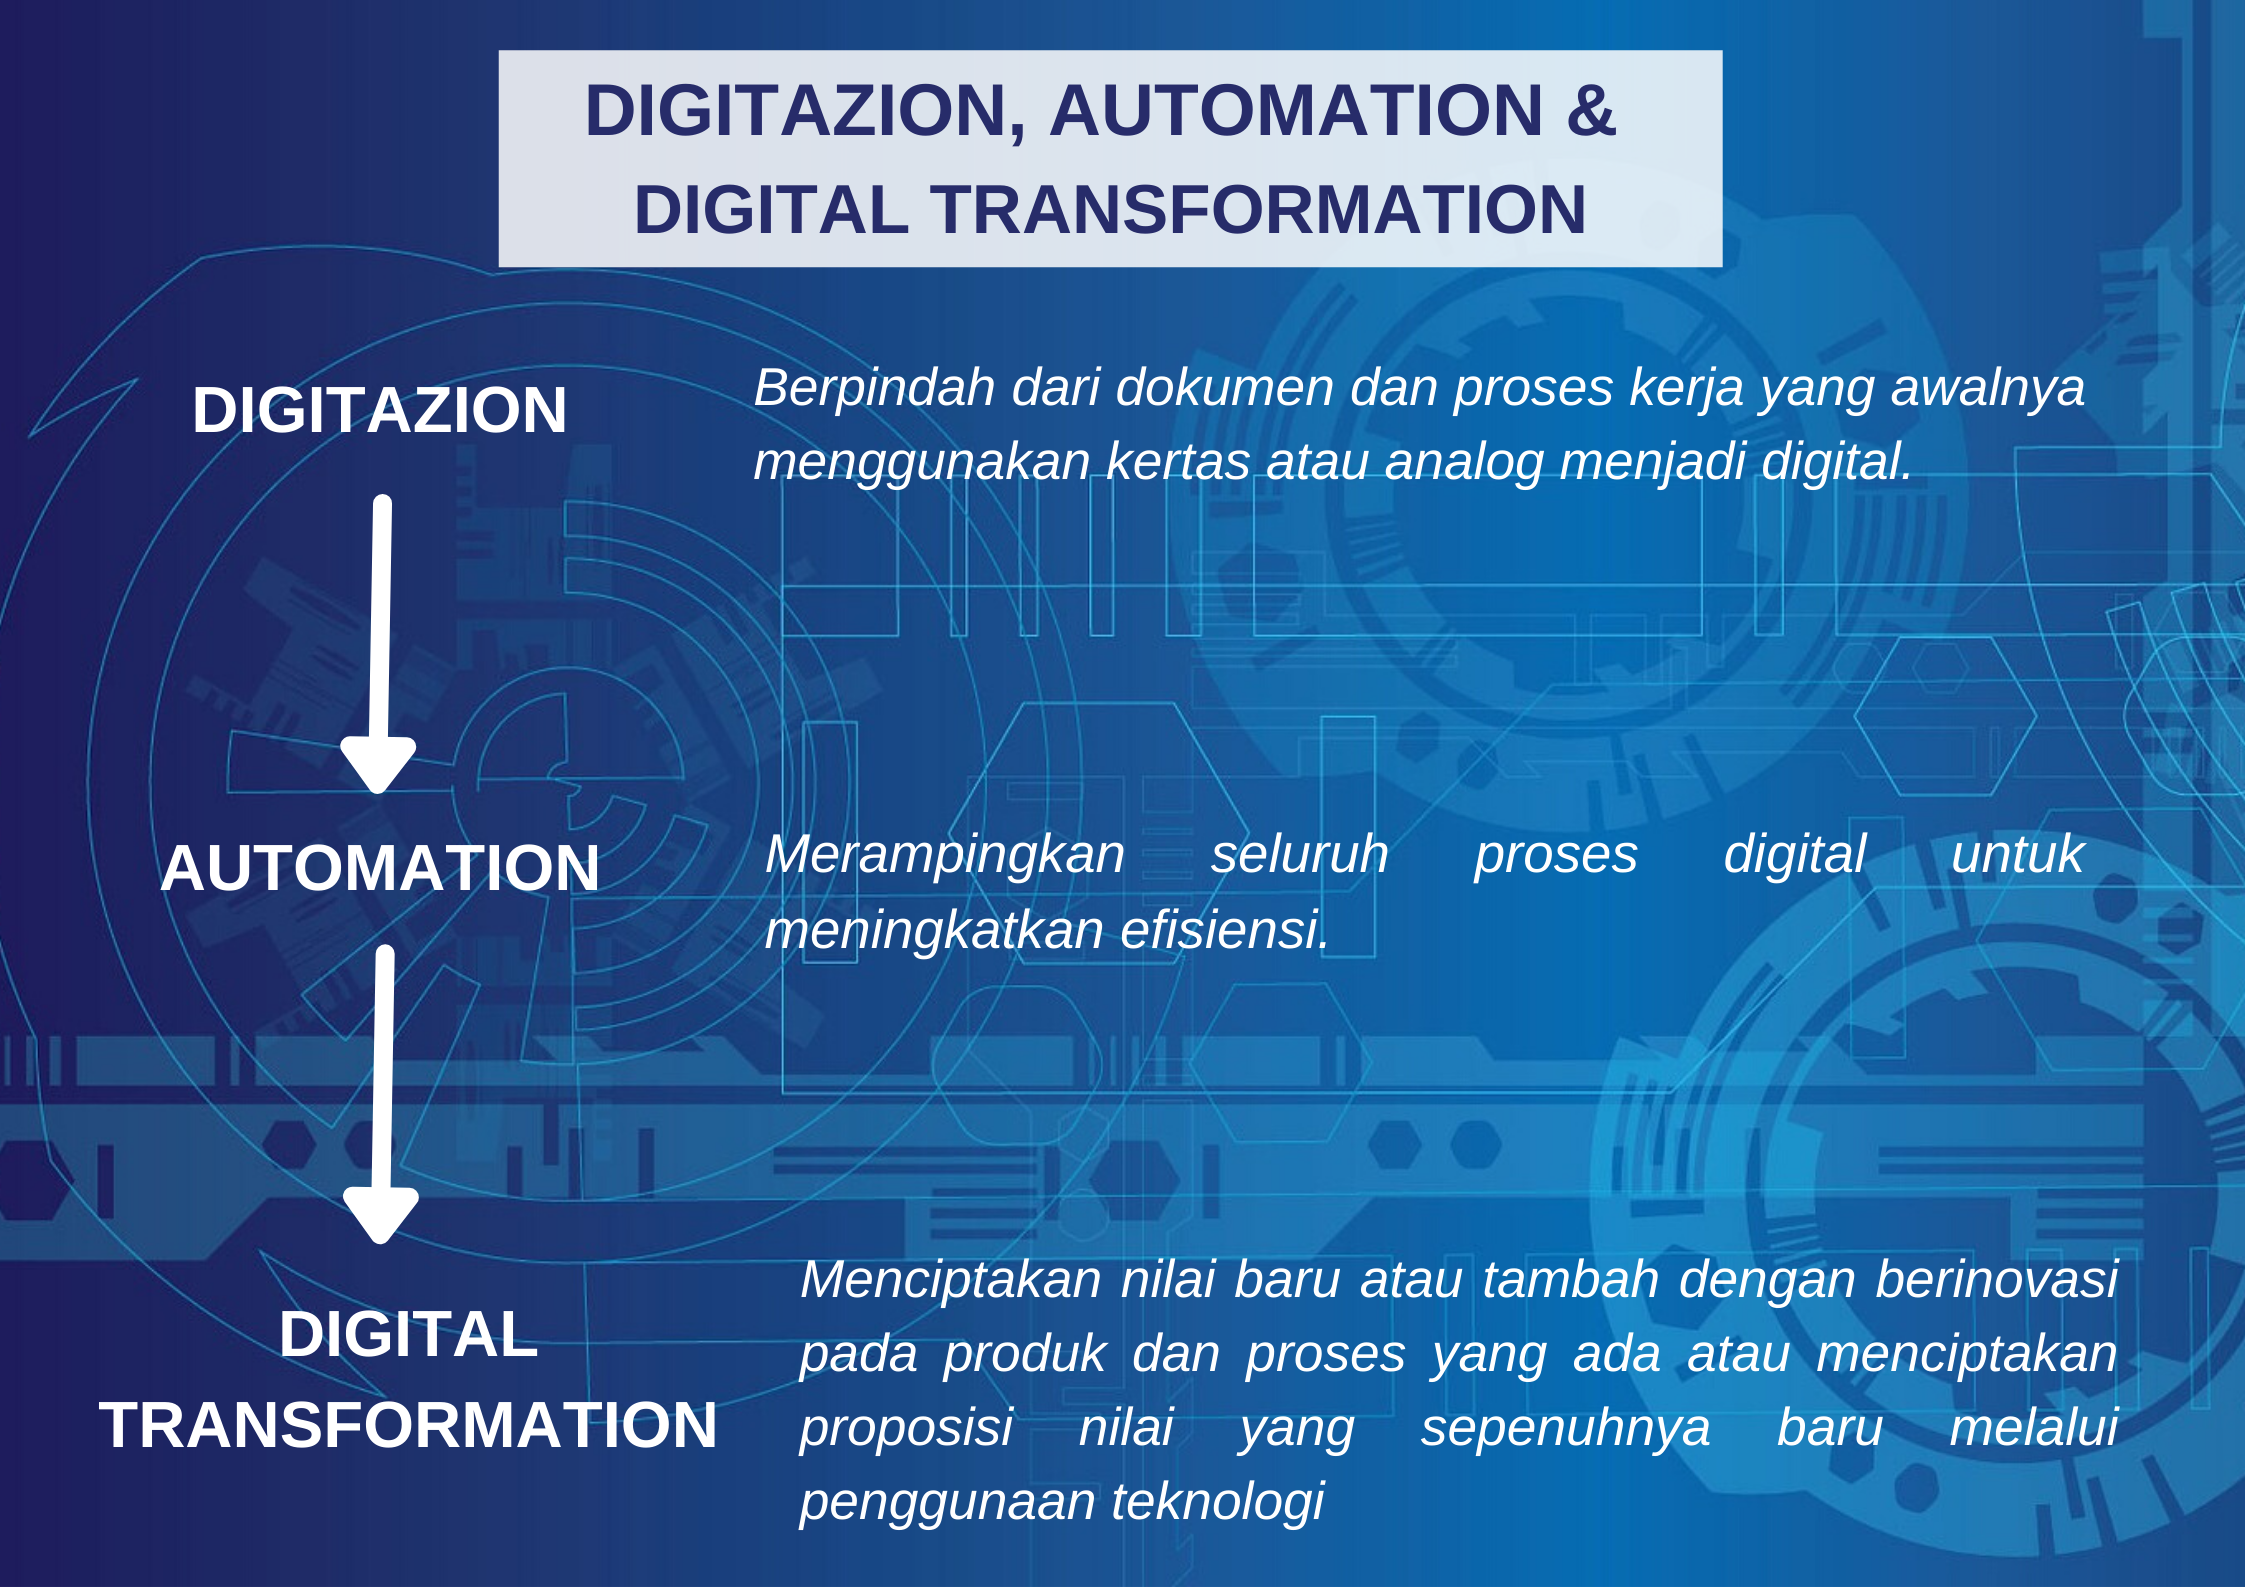 Digitazion, Automation dan Digital Transformation